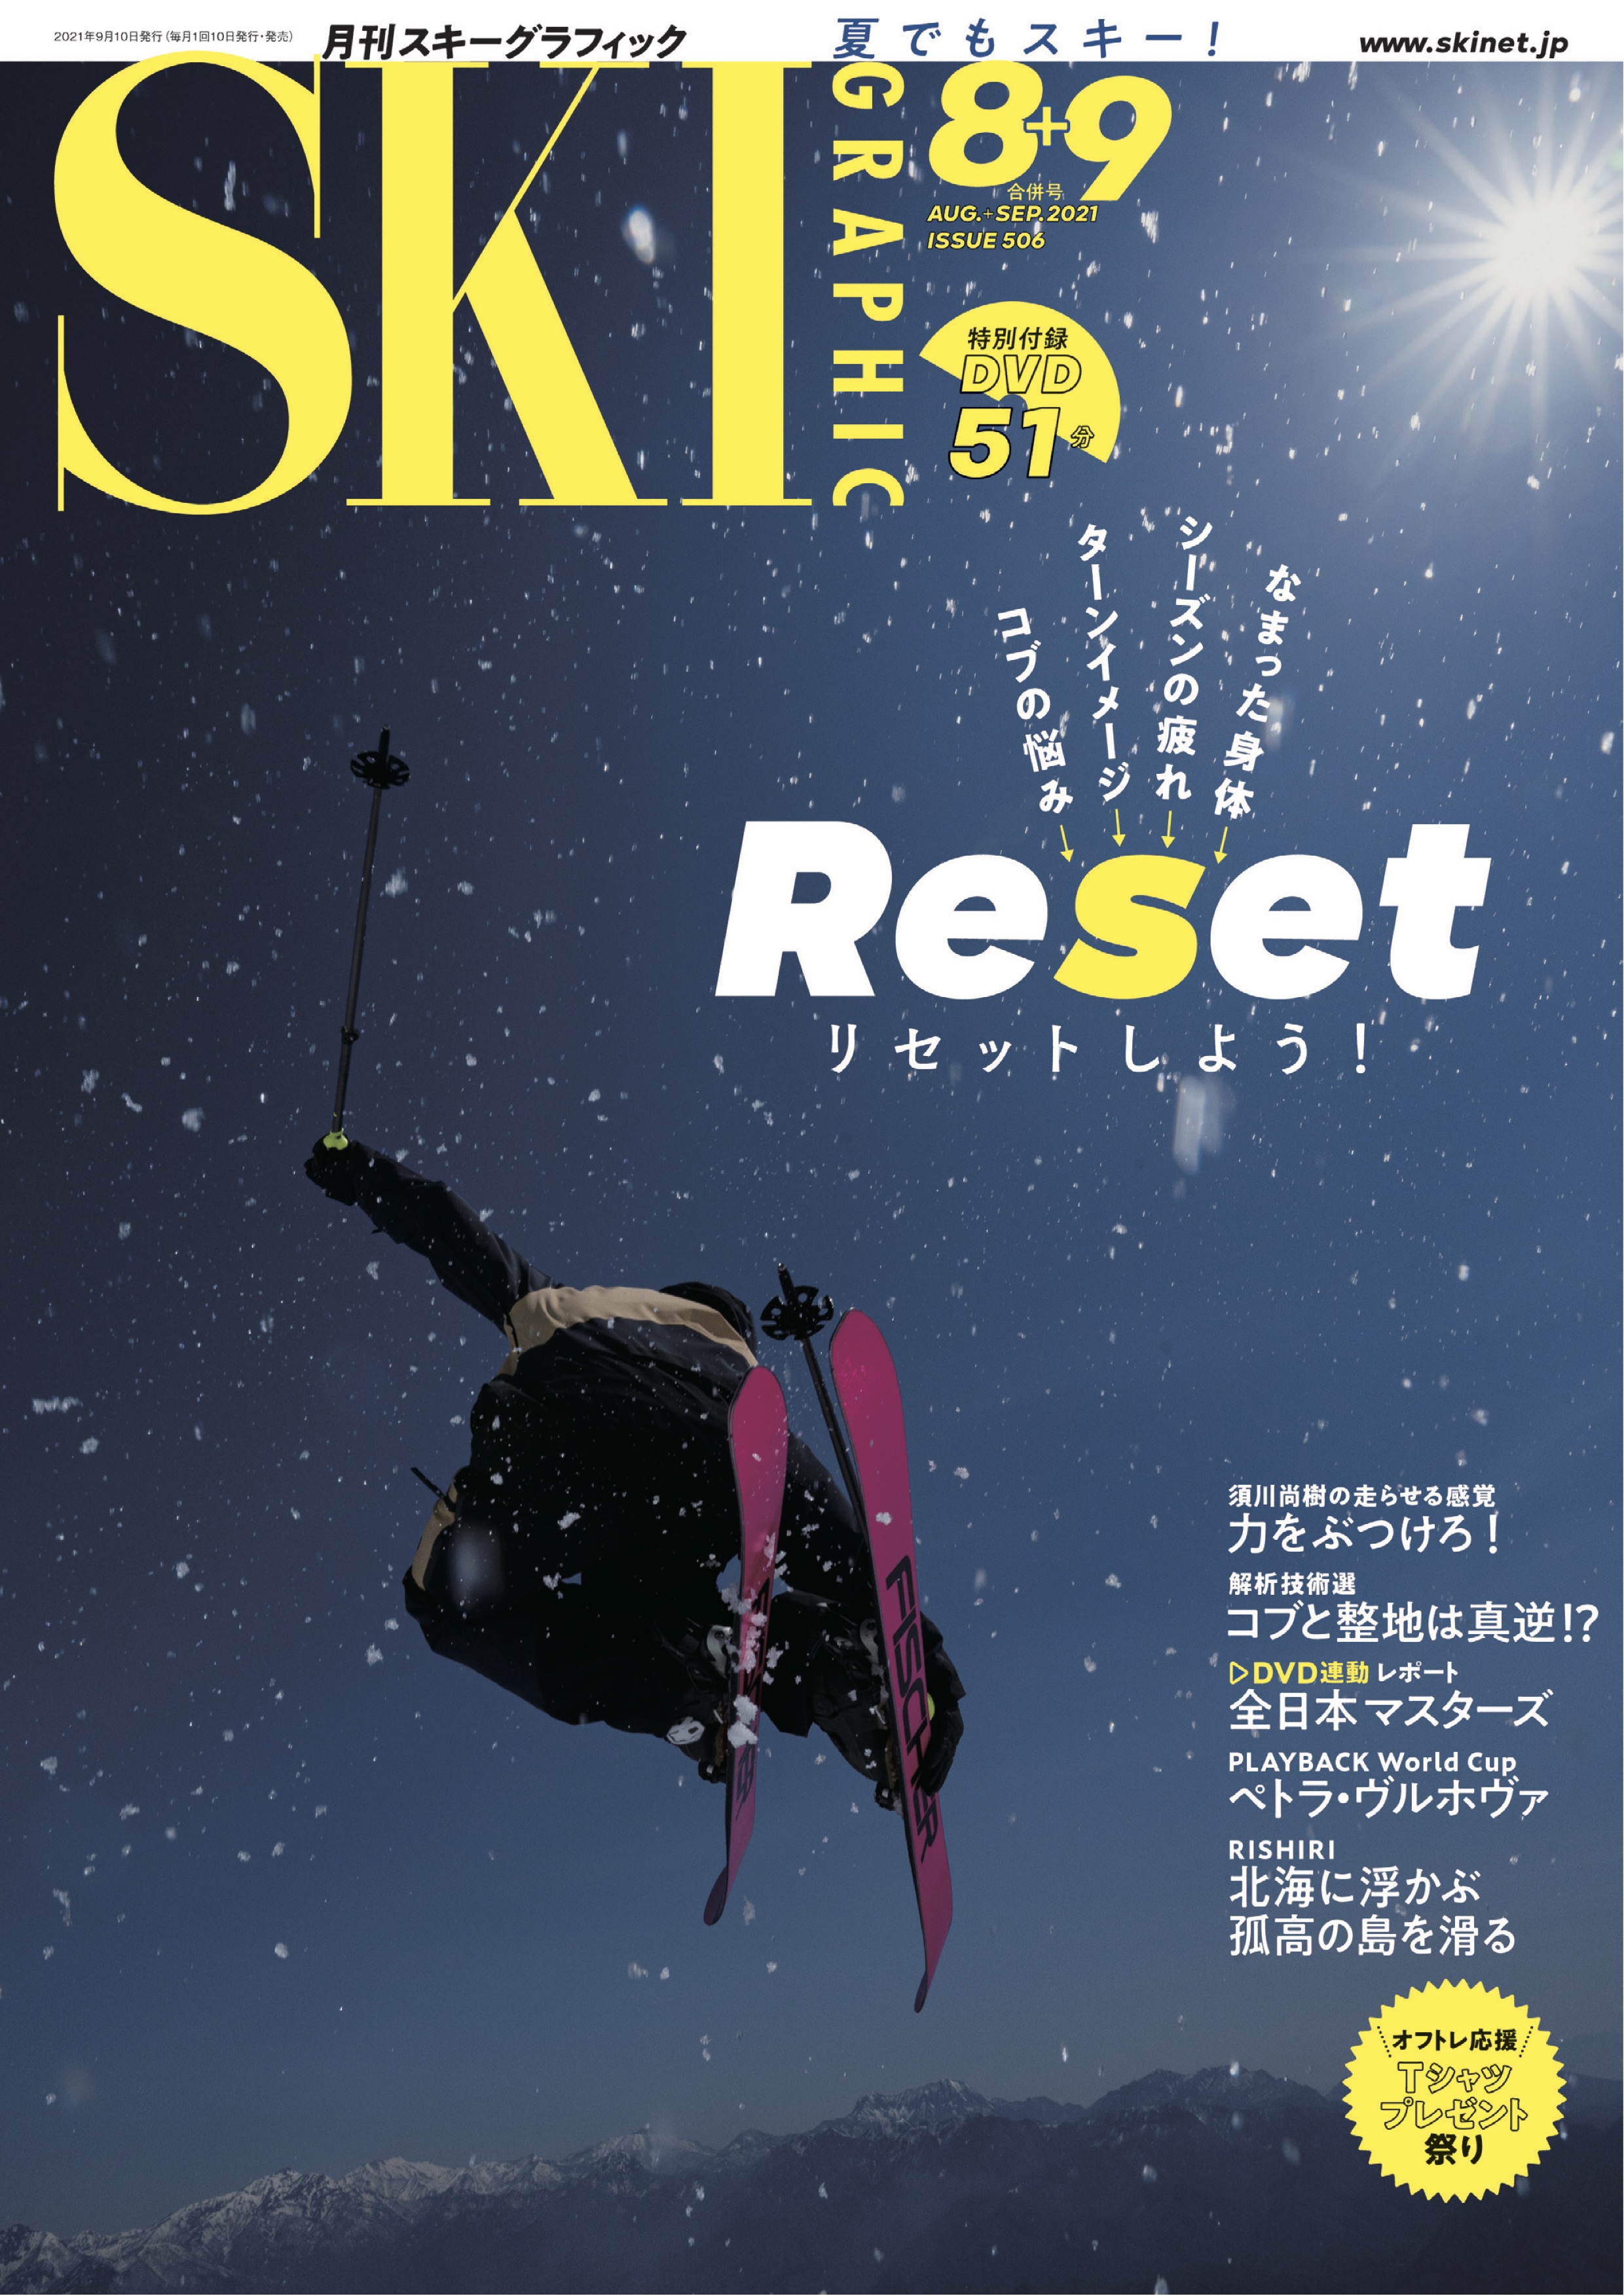 スキーグラフィックNo.506 - スキーグラフィック編集部 - 漫画・ラノベ